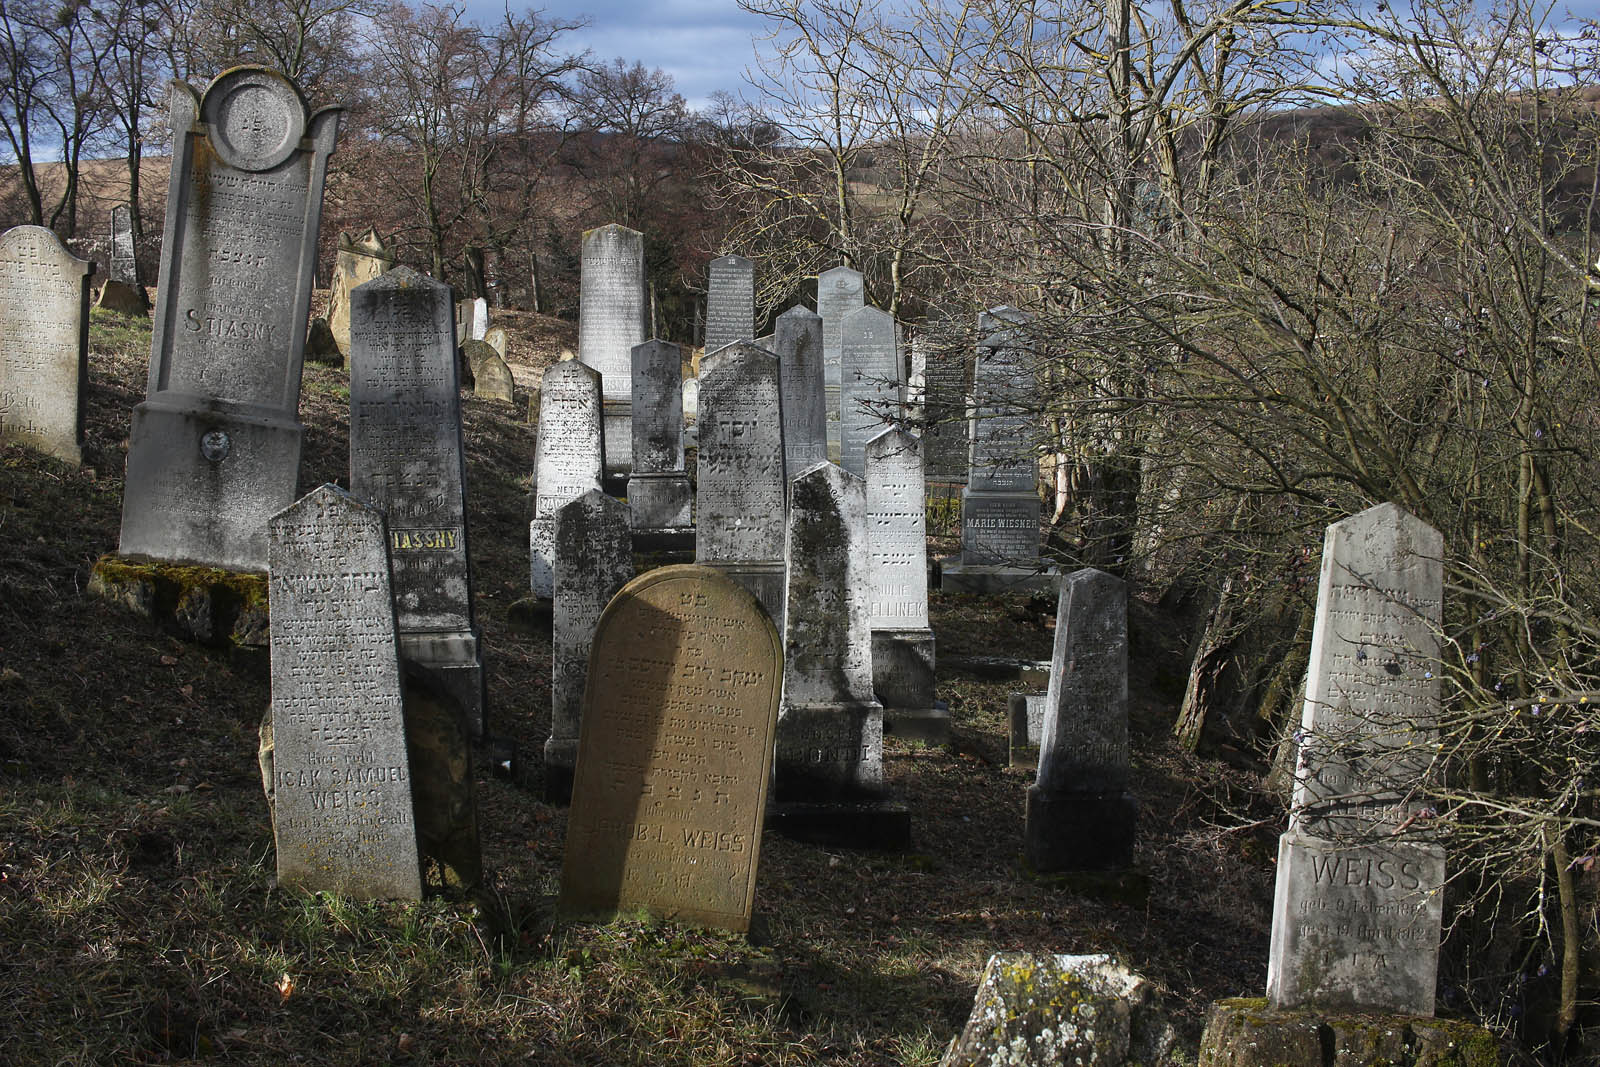 Dambořice jsou zvláštní obec na pomezí roviny a hor, co nejsou hory. Tady se ještě jmenují Ždánický les. Myslel jsem si, že jsme pořád těsně za jihovýchodním okrajem Brna a tak jsem byl v šoku, když jsem zjistil, že Dambořice měly kdysi nádraží na Ždánické dráze! Kromě toho je tu taky neobvyklý židovský hřbitov ze 16. století, který těsně přiléhá ke hřbitovu křesťanskému (a taky ateistickému).